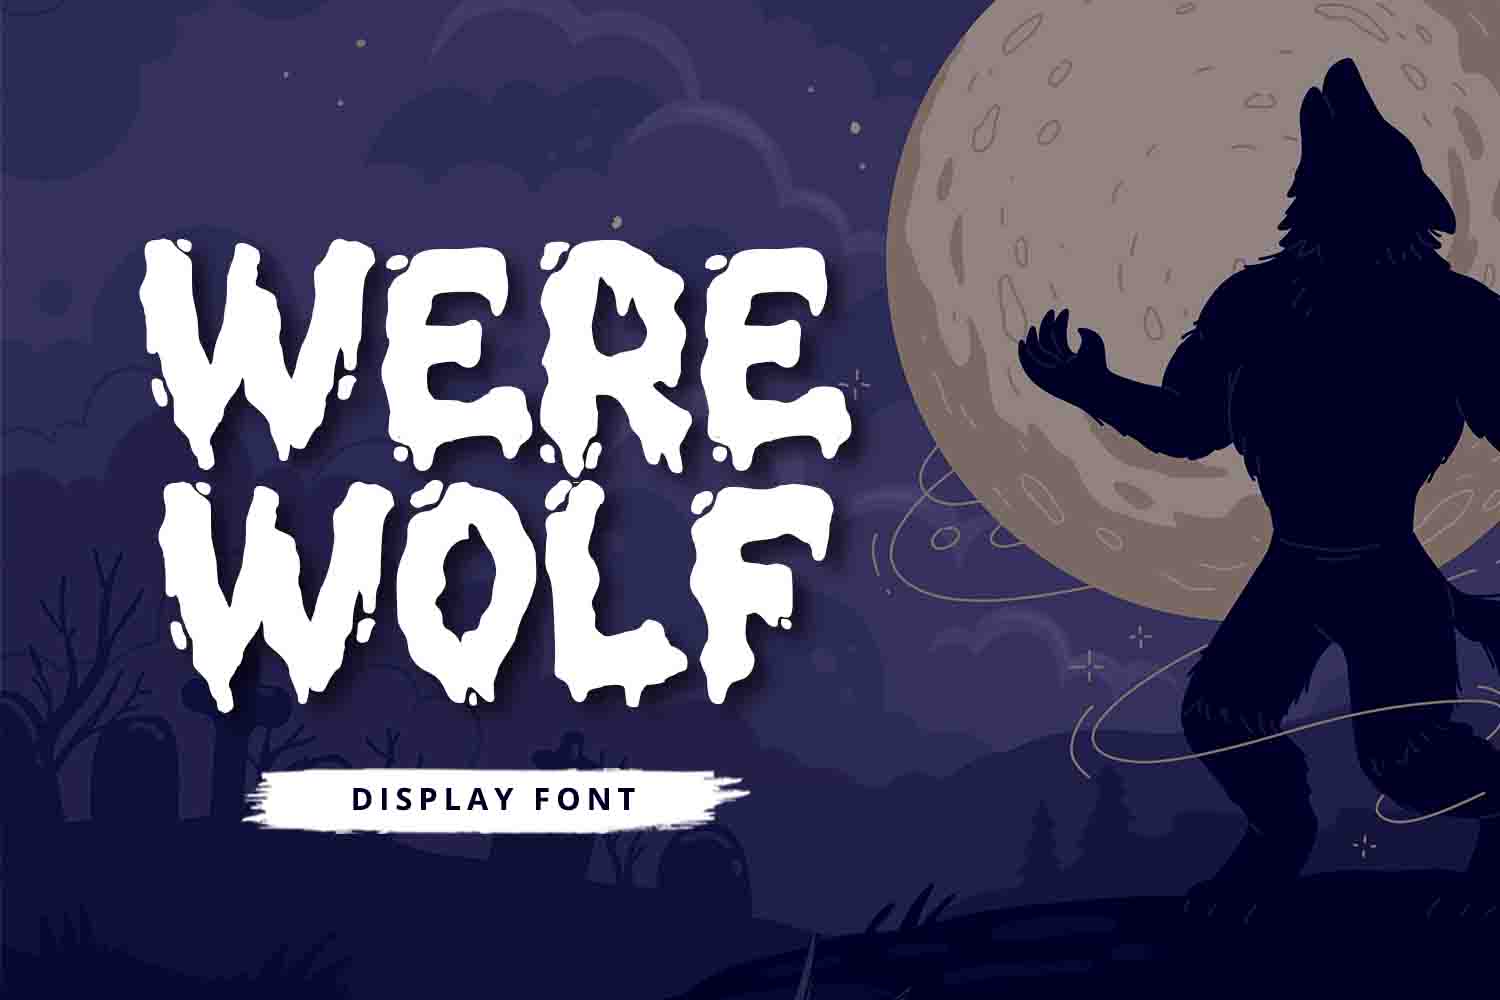 Werewolf Free Font